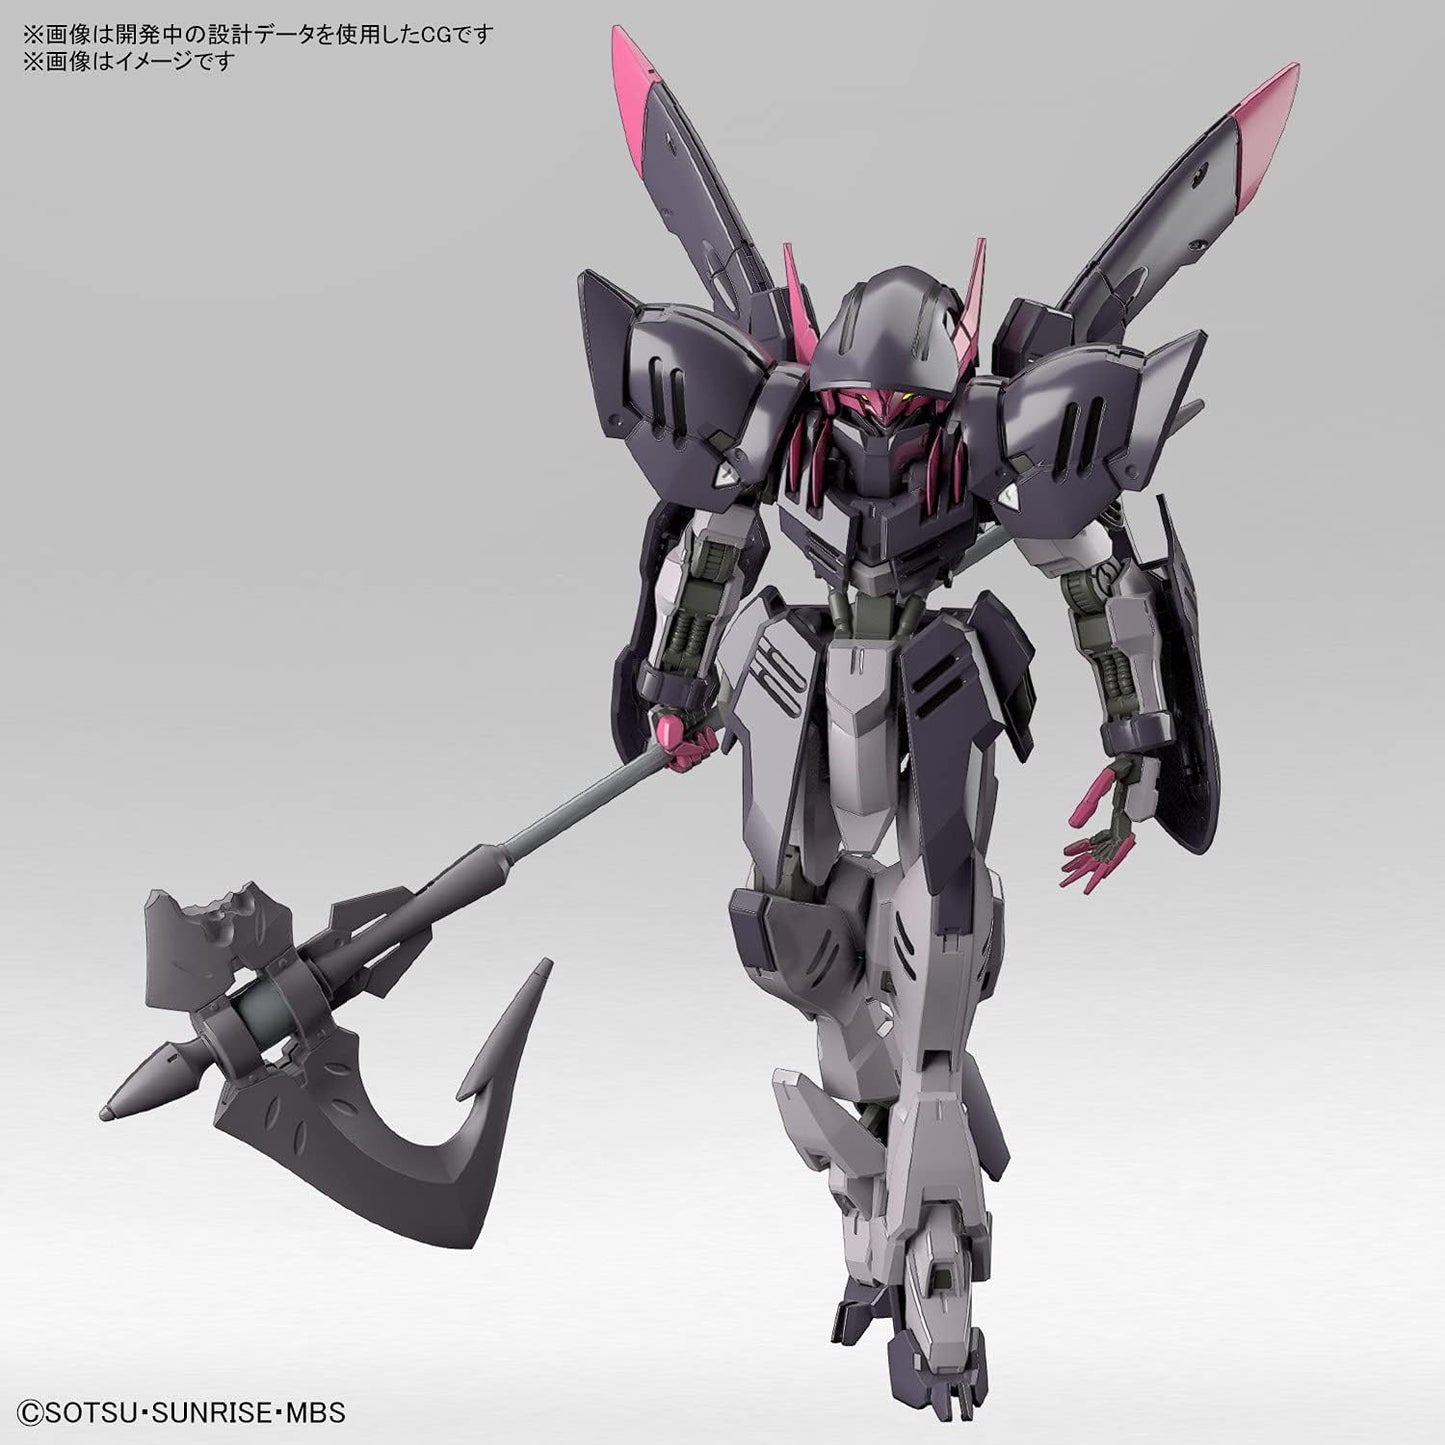 1/144 HG "Mobile Suit Gundam: Iron-Blooded Orphans Gekko" Gundam Gremory | animota